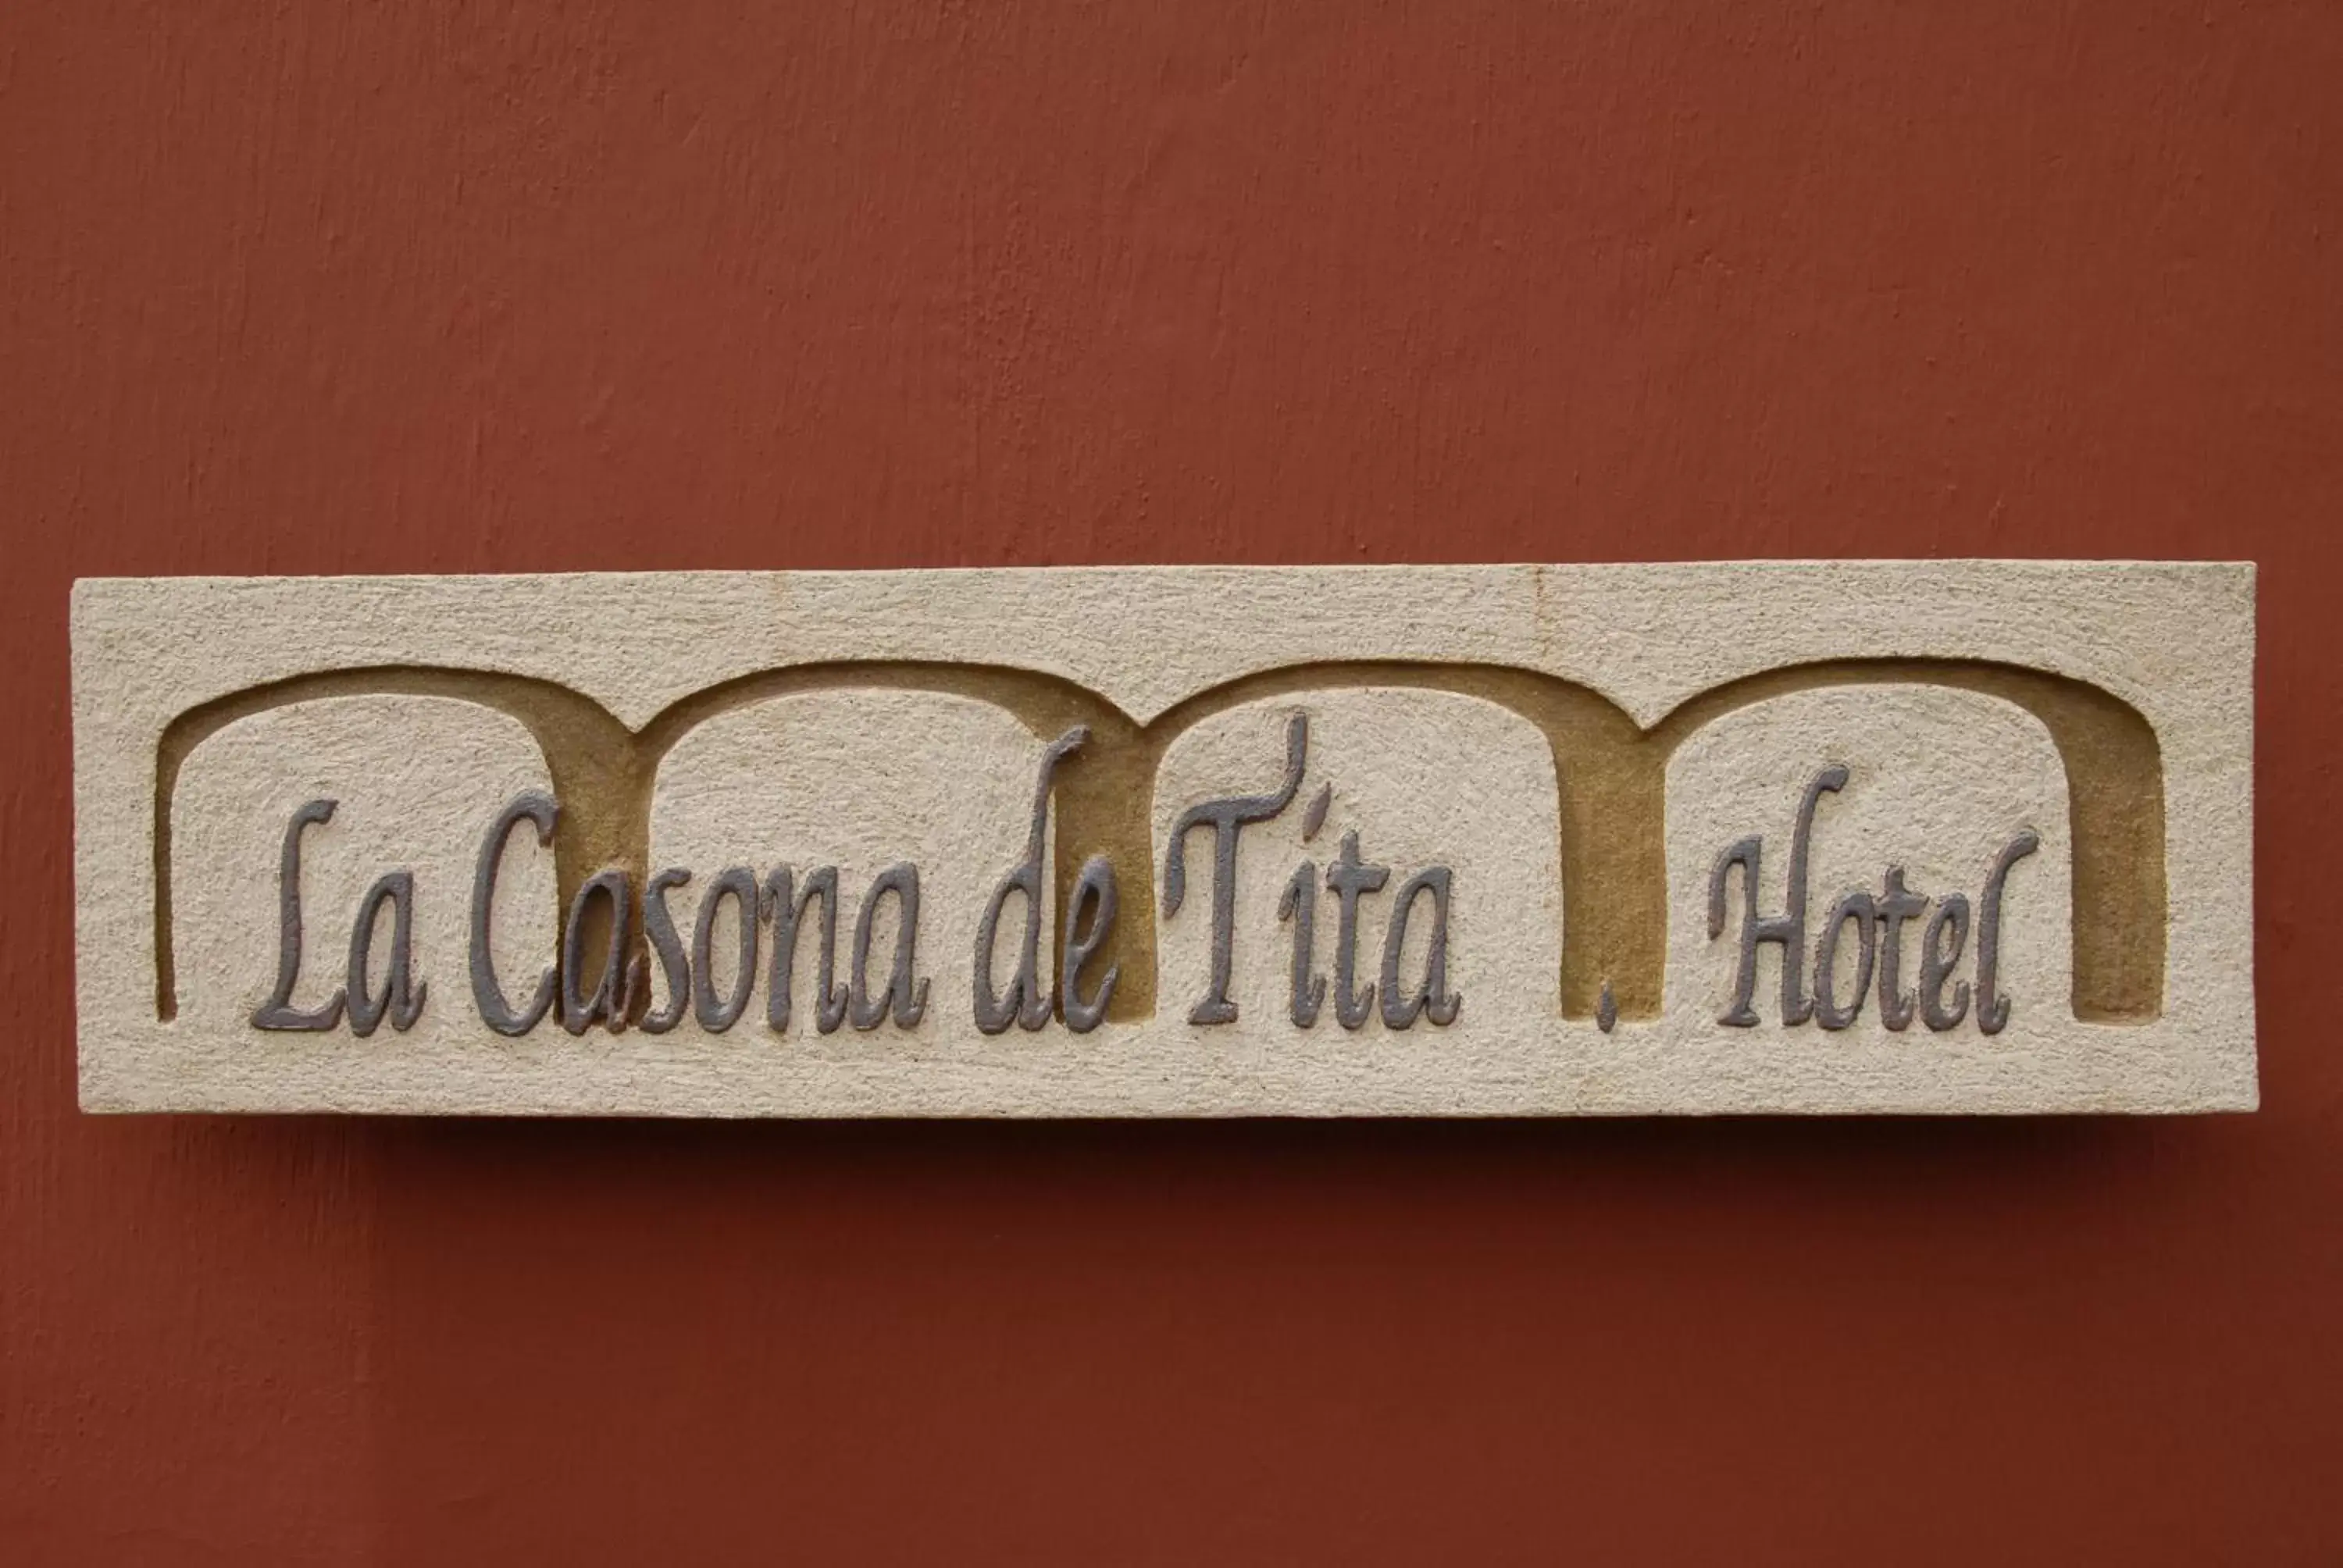 Property logo or sign in Hotel La Casona de Tita